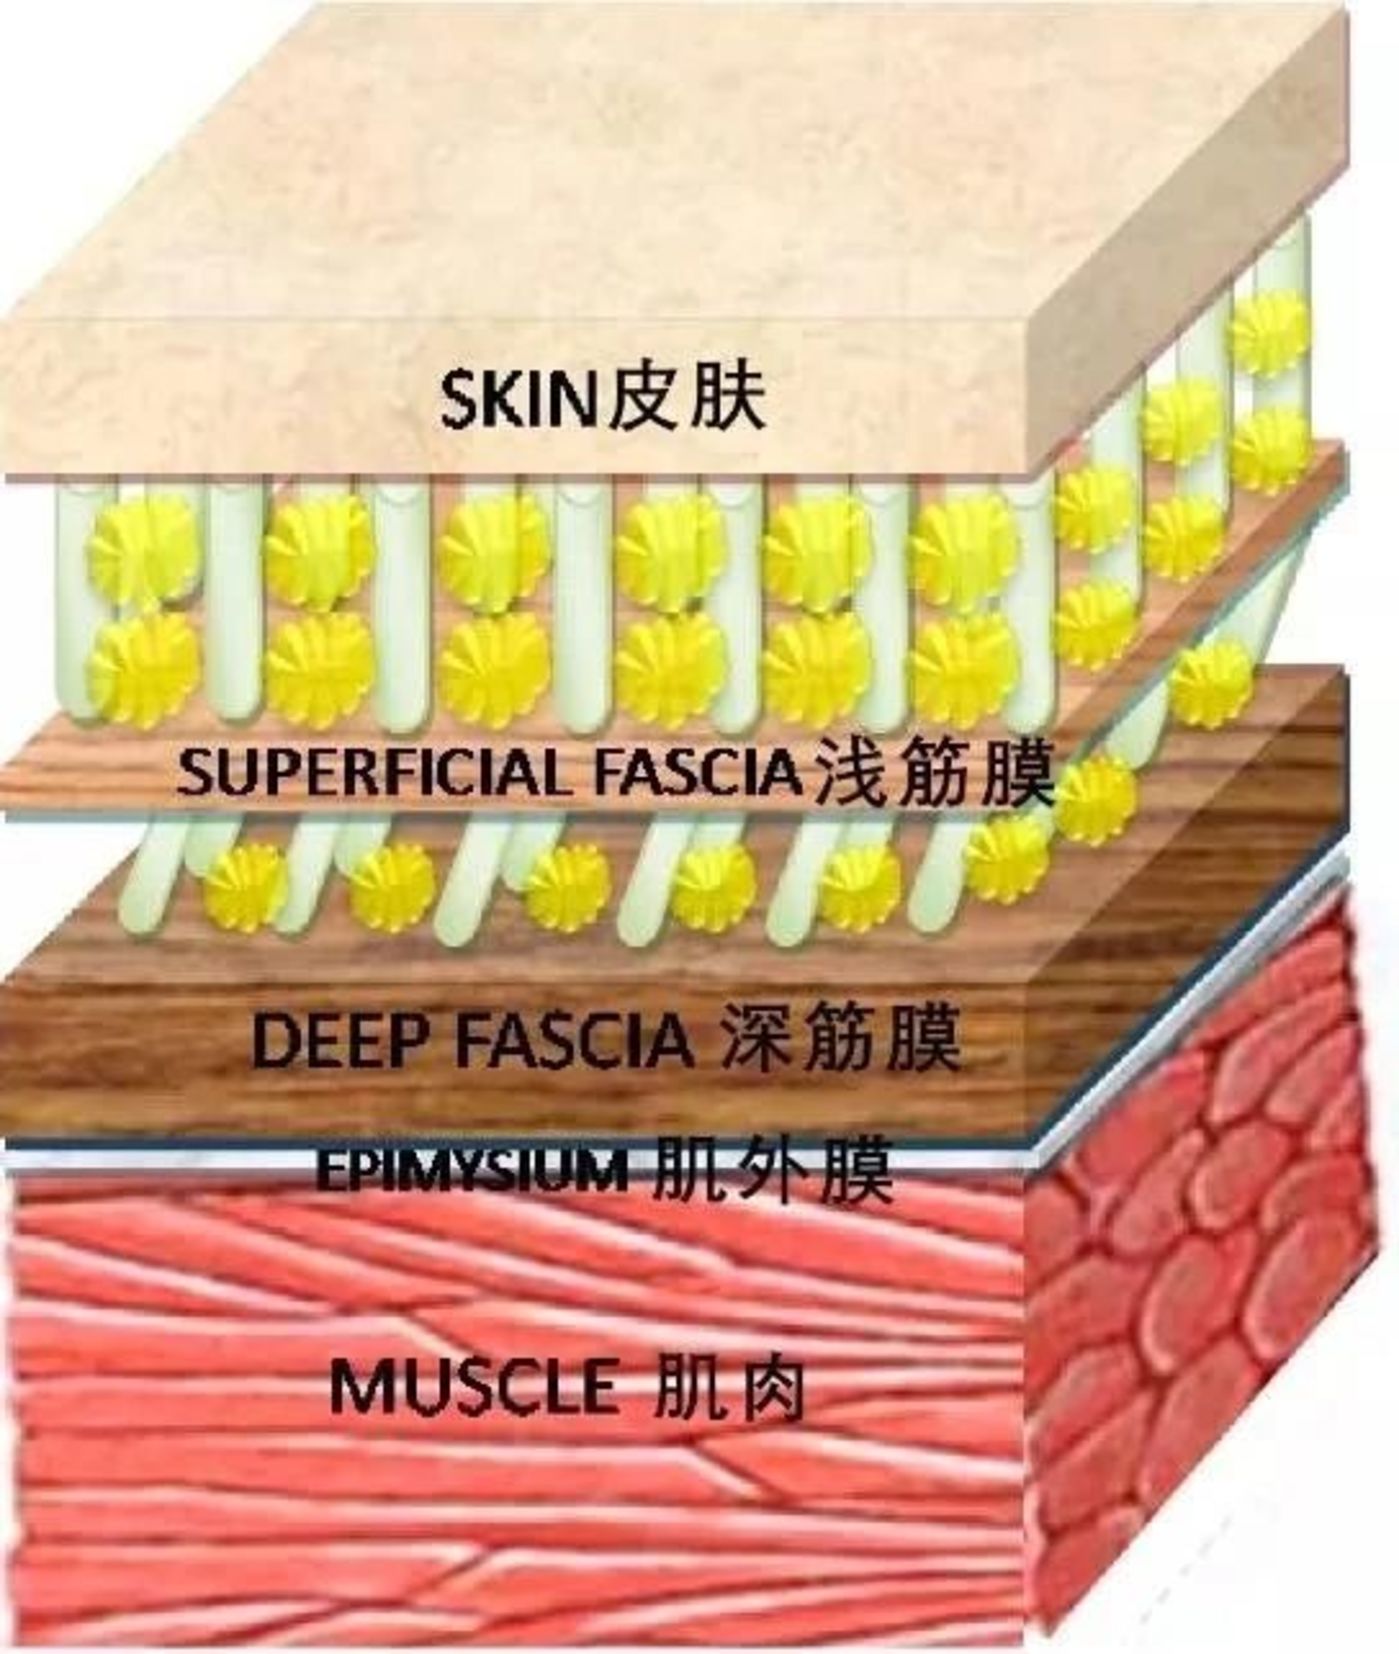 皮肤筋膜层次解剖图图片